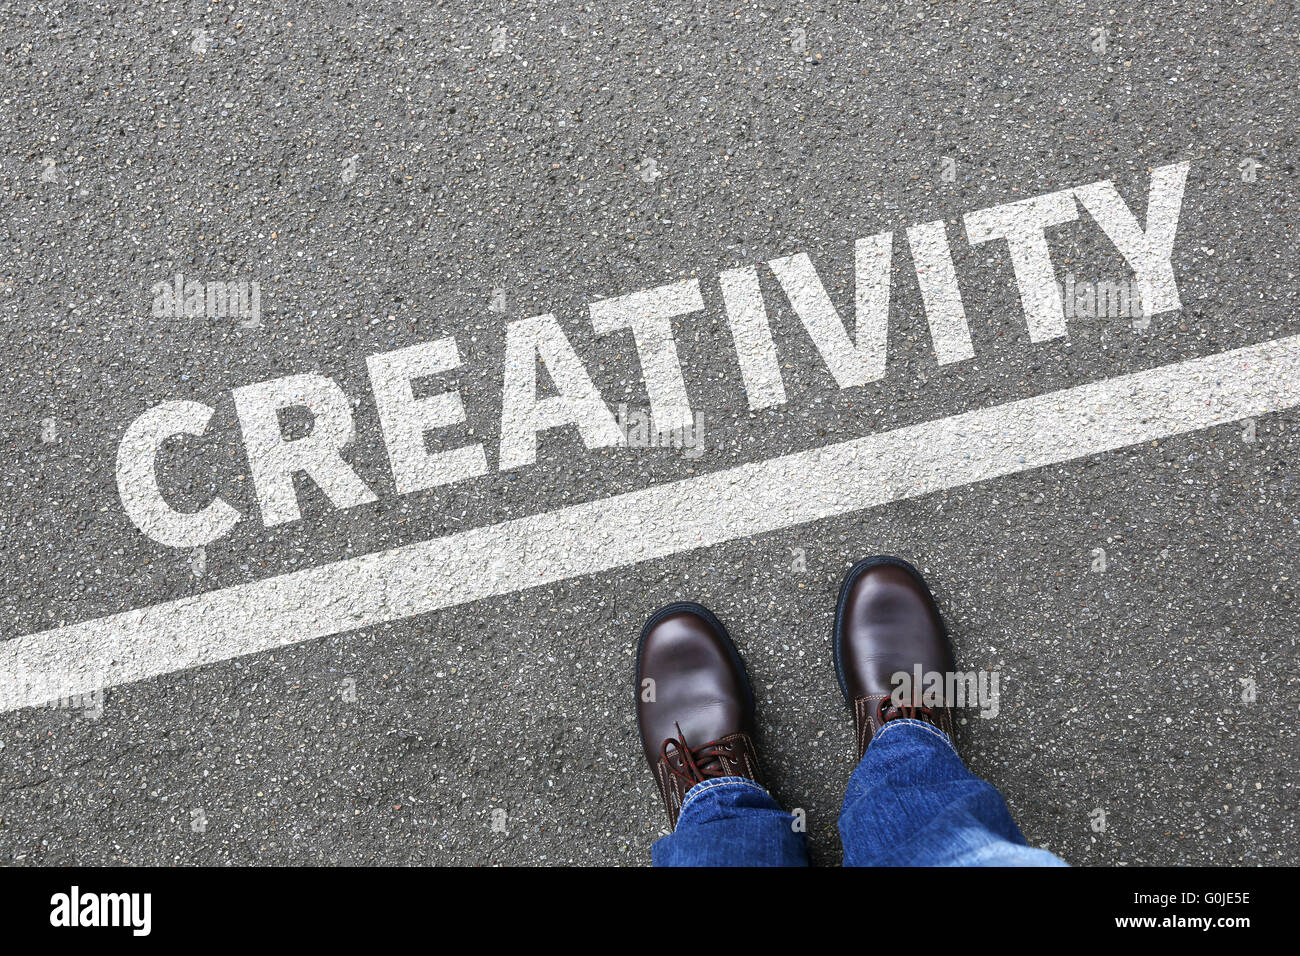 La créativité de la pensée créative imagination imaginer le succès des idées d'affaires réussi inspiration du concept d'entreprise Banque D'Images